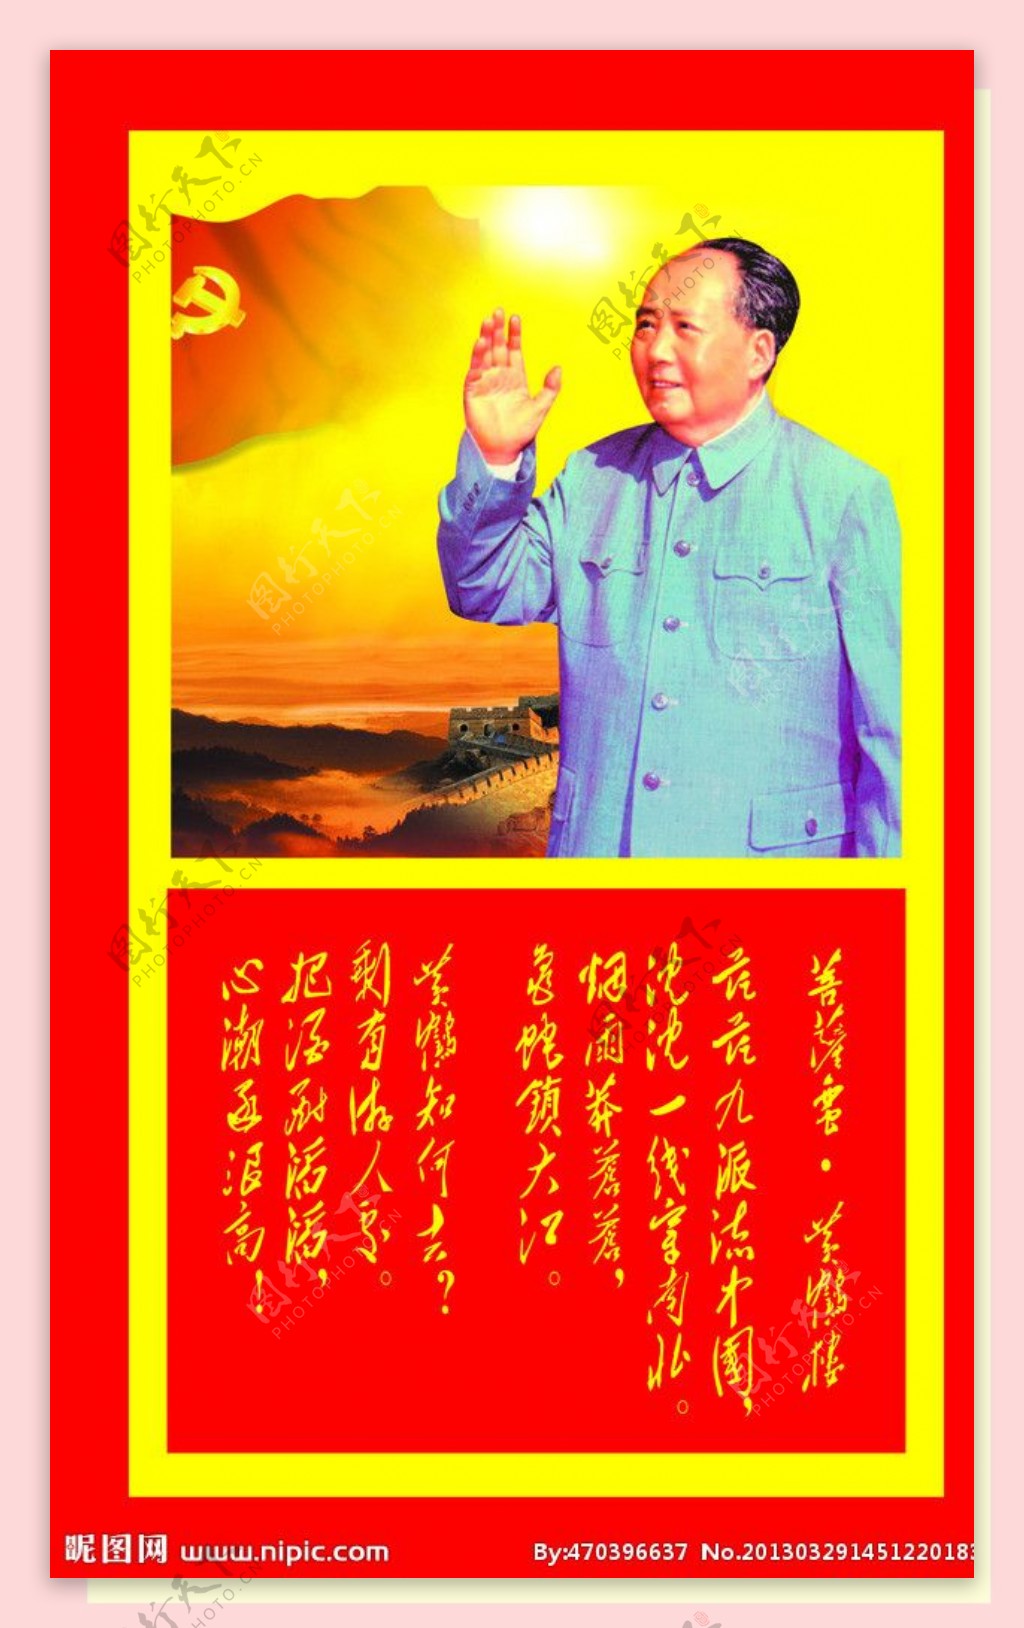 毛泽东图片